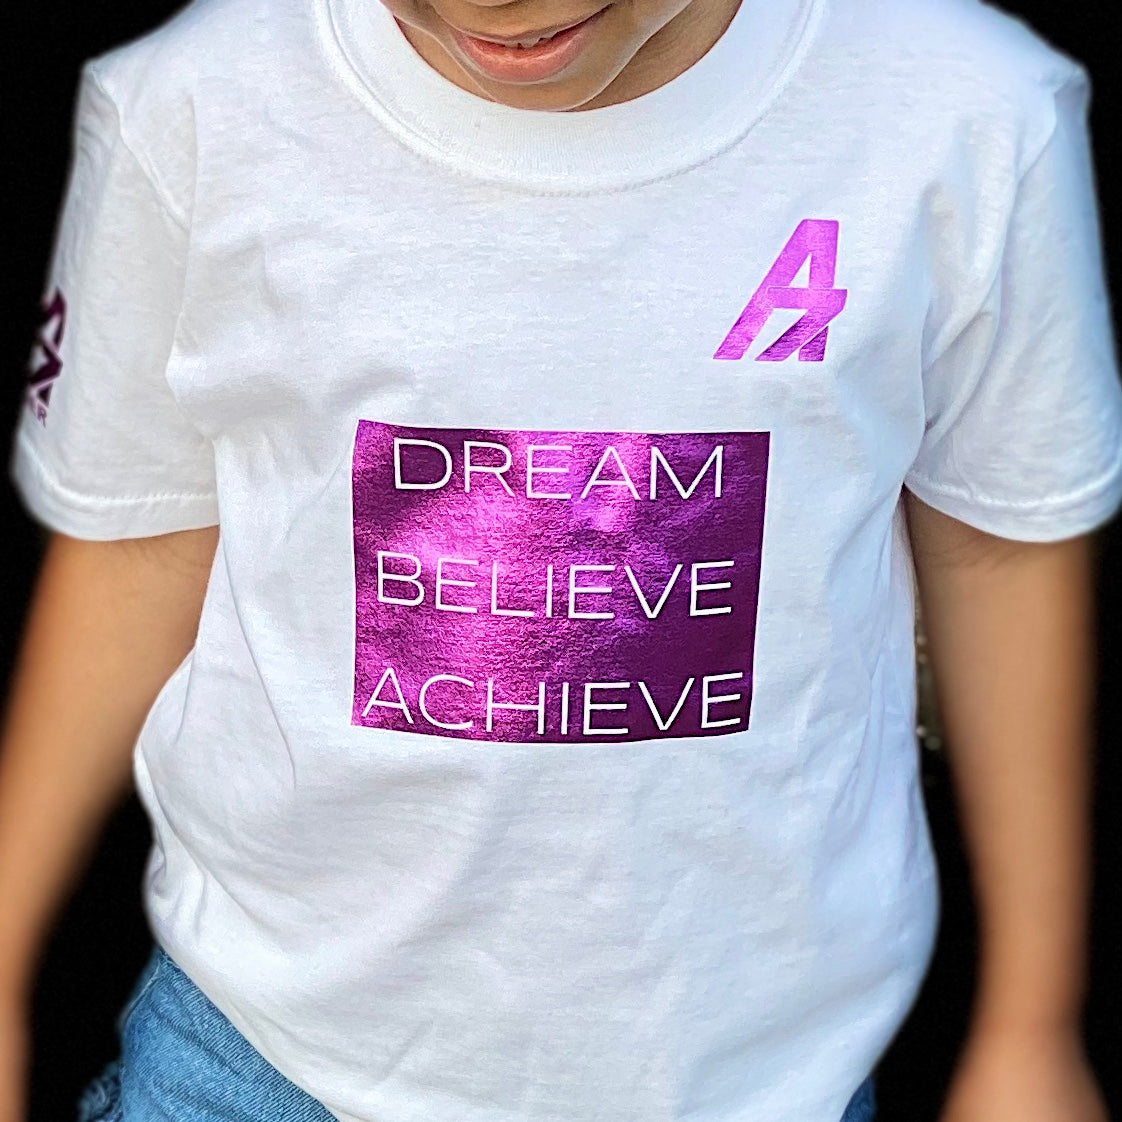 A7 Asher "Dream | Believe | Achieve" Block Logo Childrens Tshirt Sparkley Pink on White